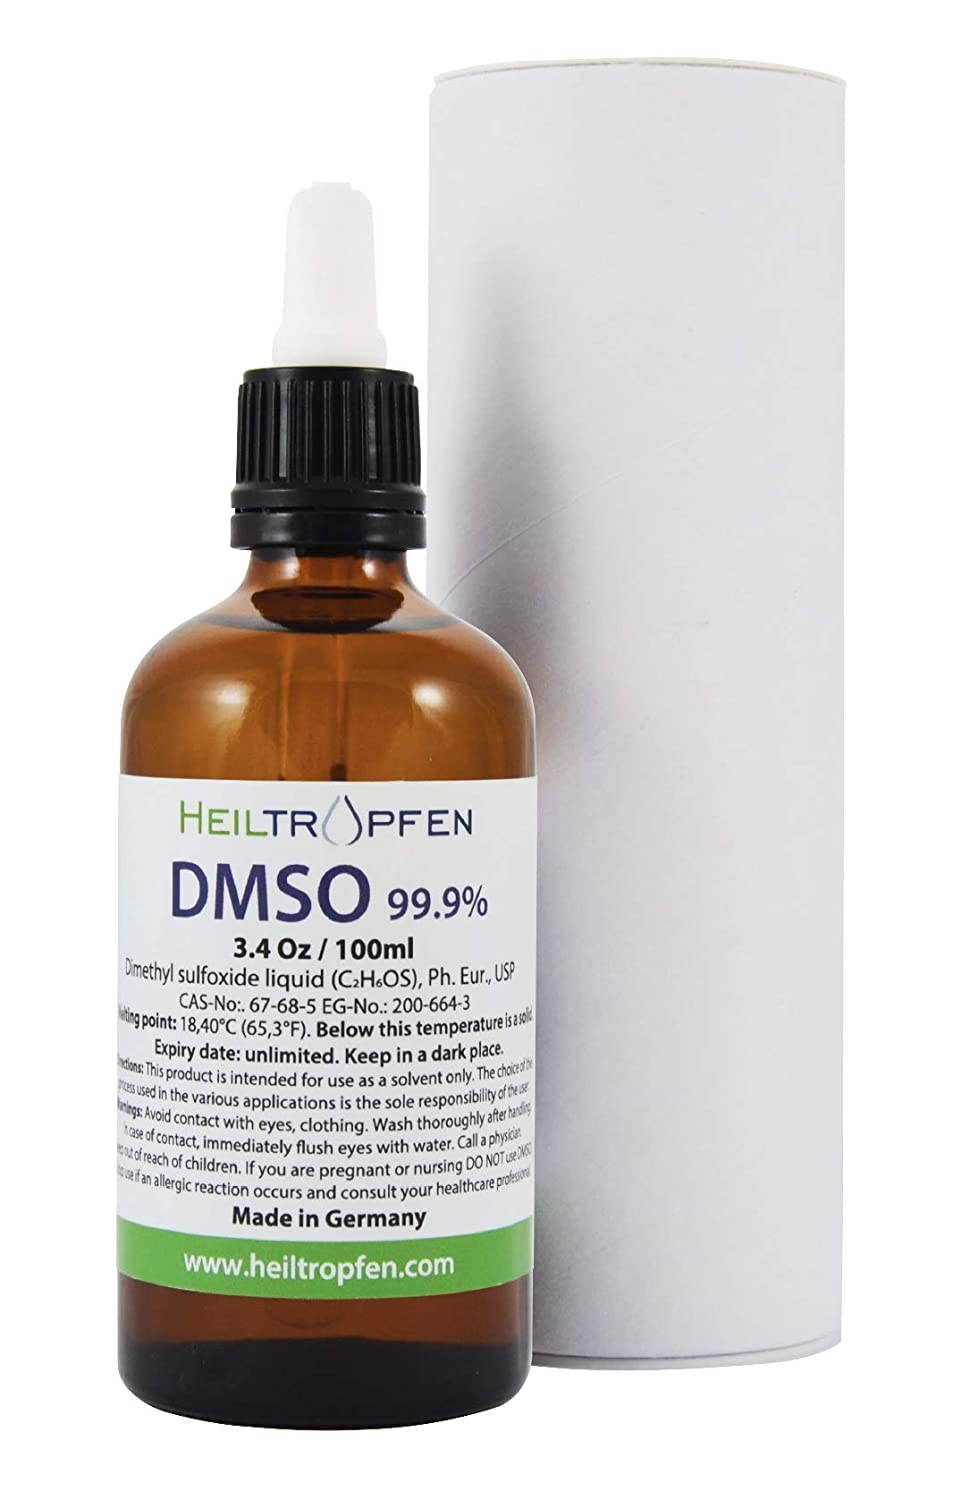 Heiltropfen No Odor DMSO - Dimethyl sulfoxide liquid - 3.4 Oz / 100ml-1